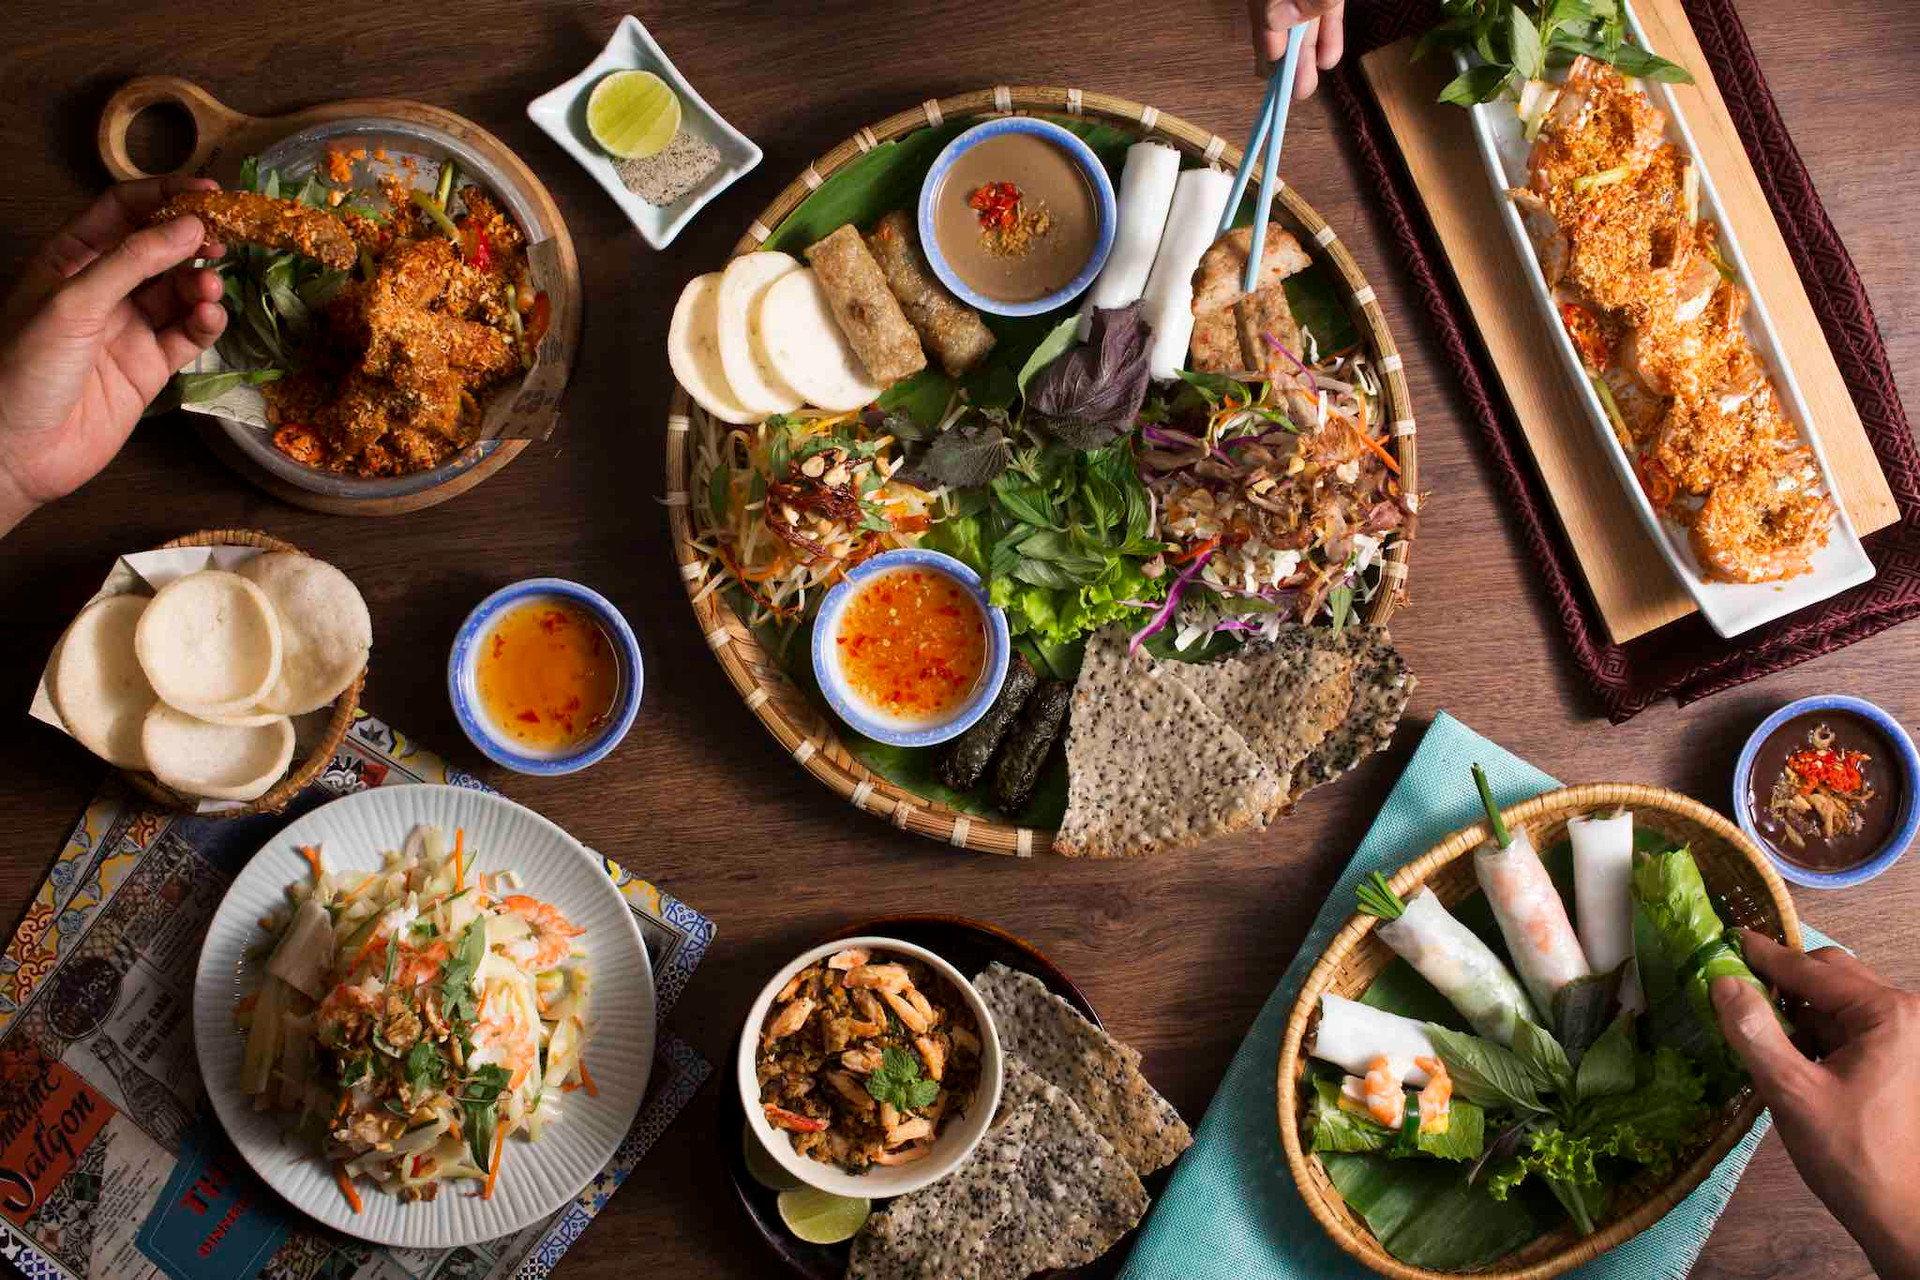 Bánh mì heo quay, thanh long Phan Thiết, nước mắm Phú Quốc... đưa Việt Nam vào top 20 nền ẩm thực hấp dẫn nhất thế giới - 2